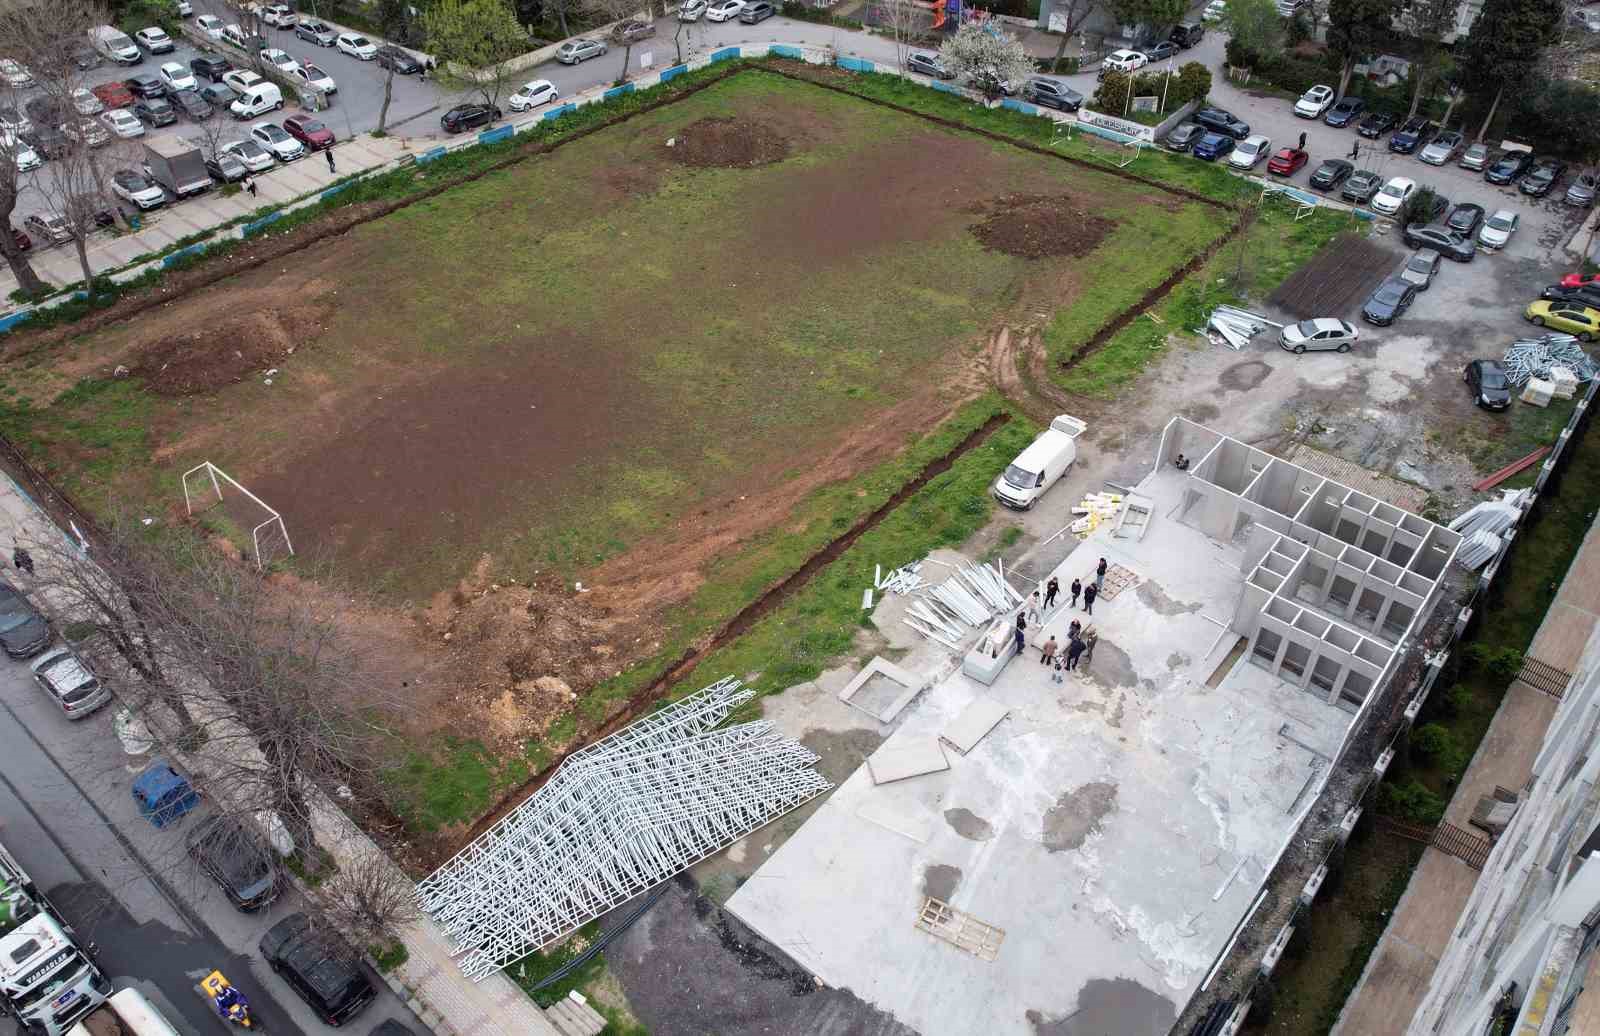 bakırköy’de futbol sahasına yapılan tesis, belediye ile vatandaşı karşı kaşıya getirdi